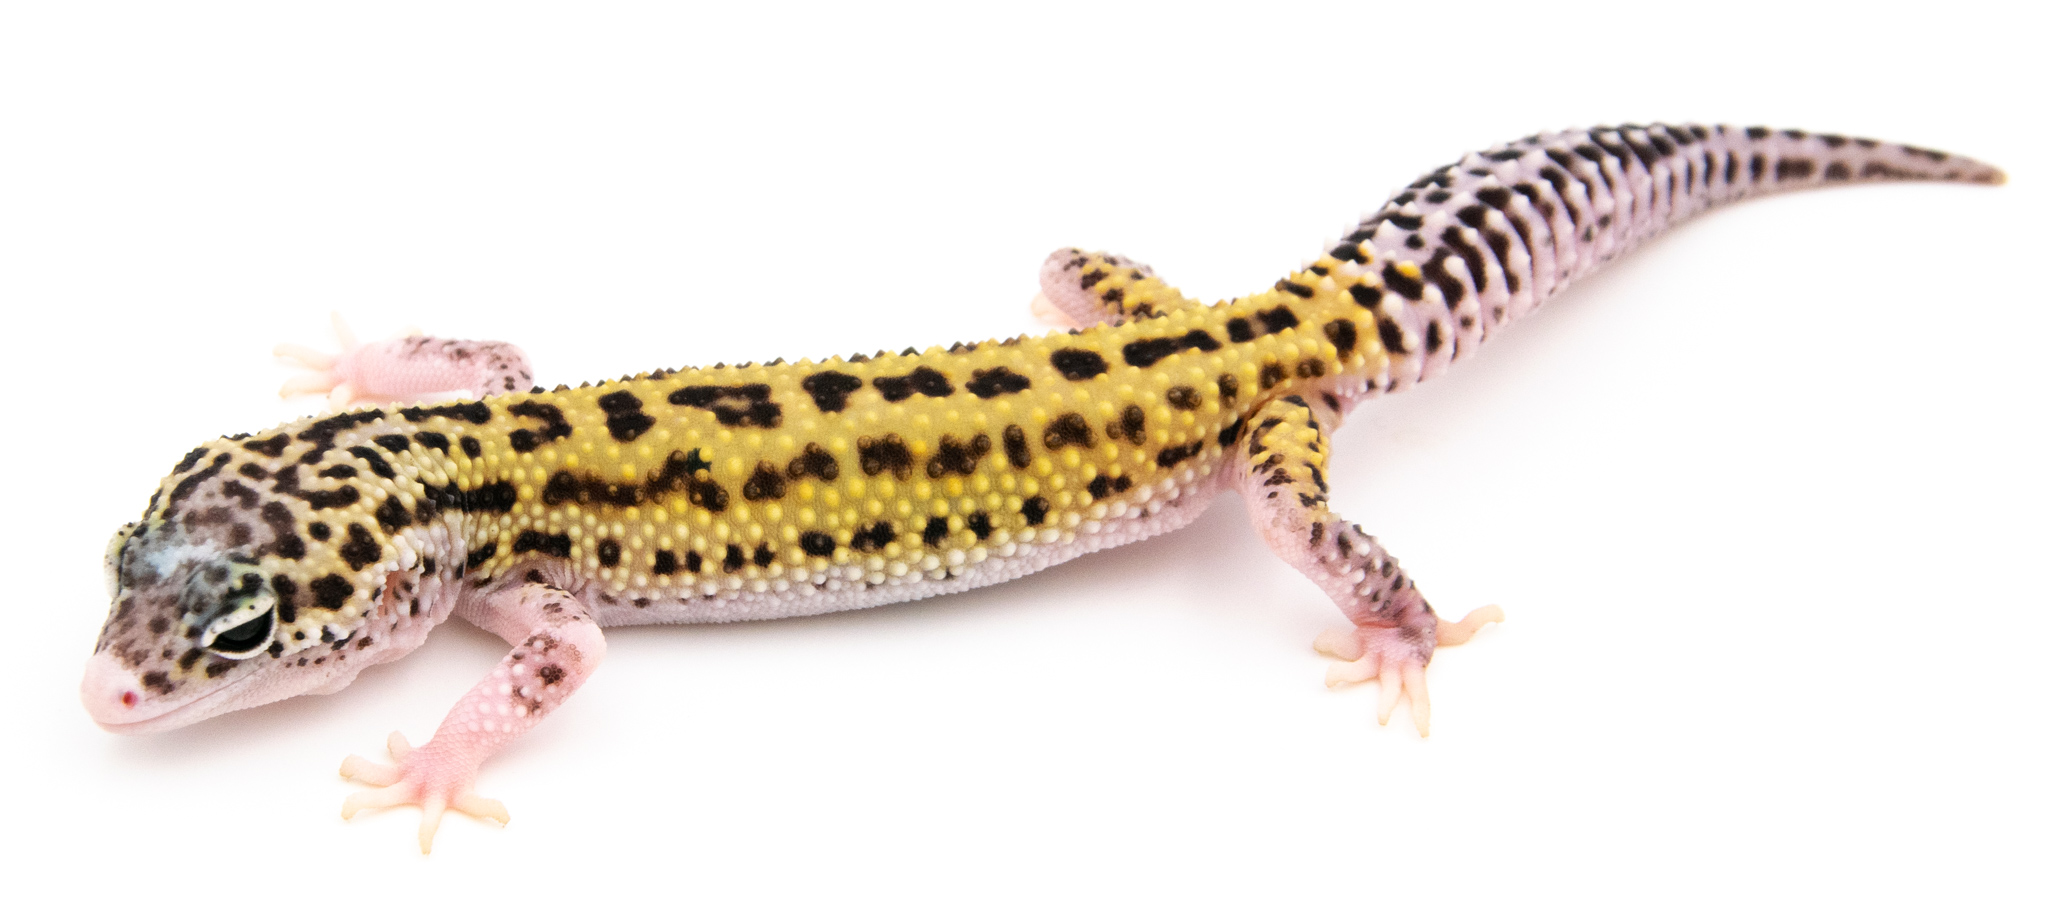 EJ117 - Gecko Léopard - Eublepharis Macularius Eclipse - non sexé  - NC 2021